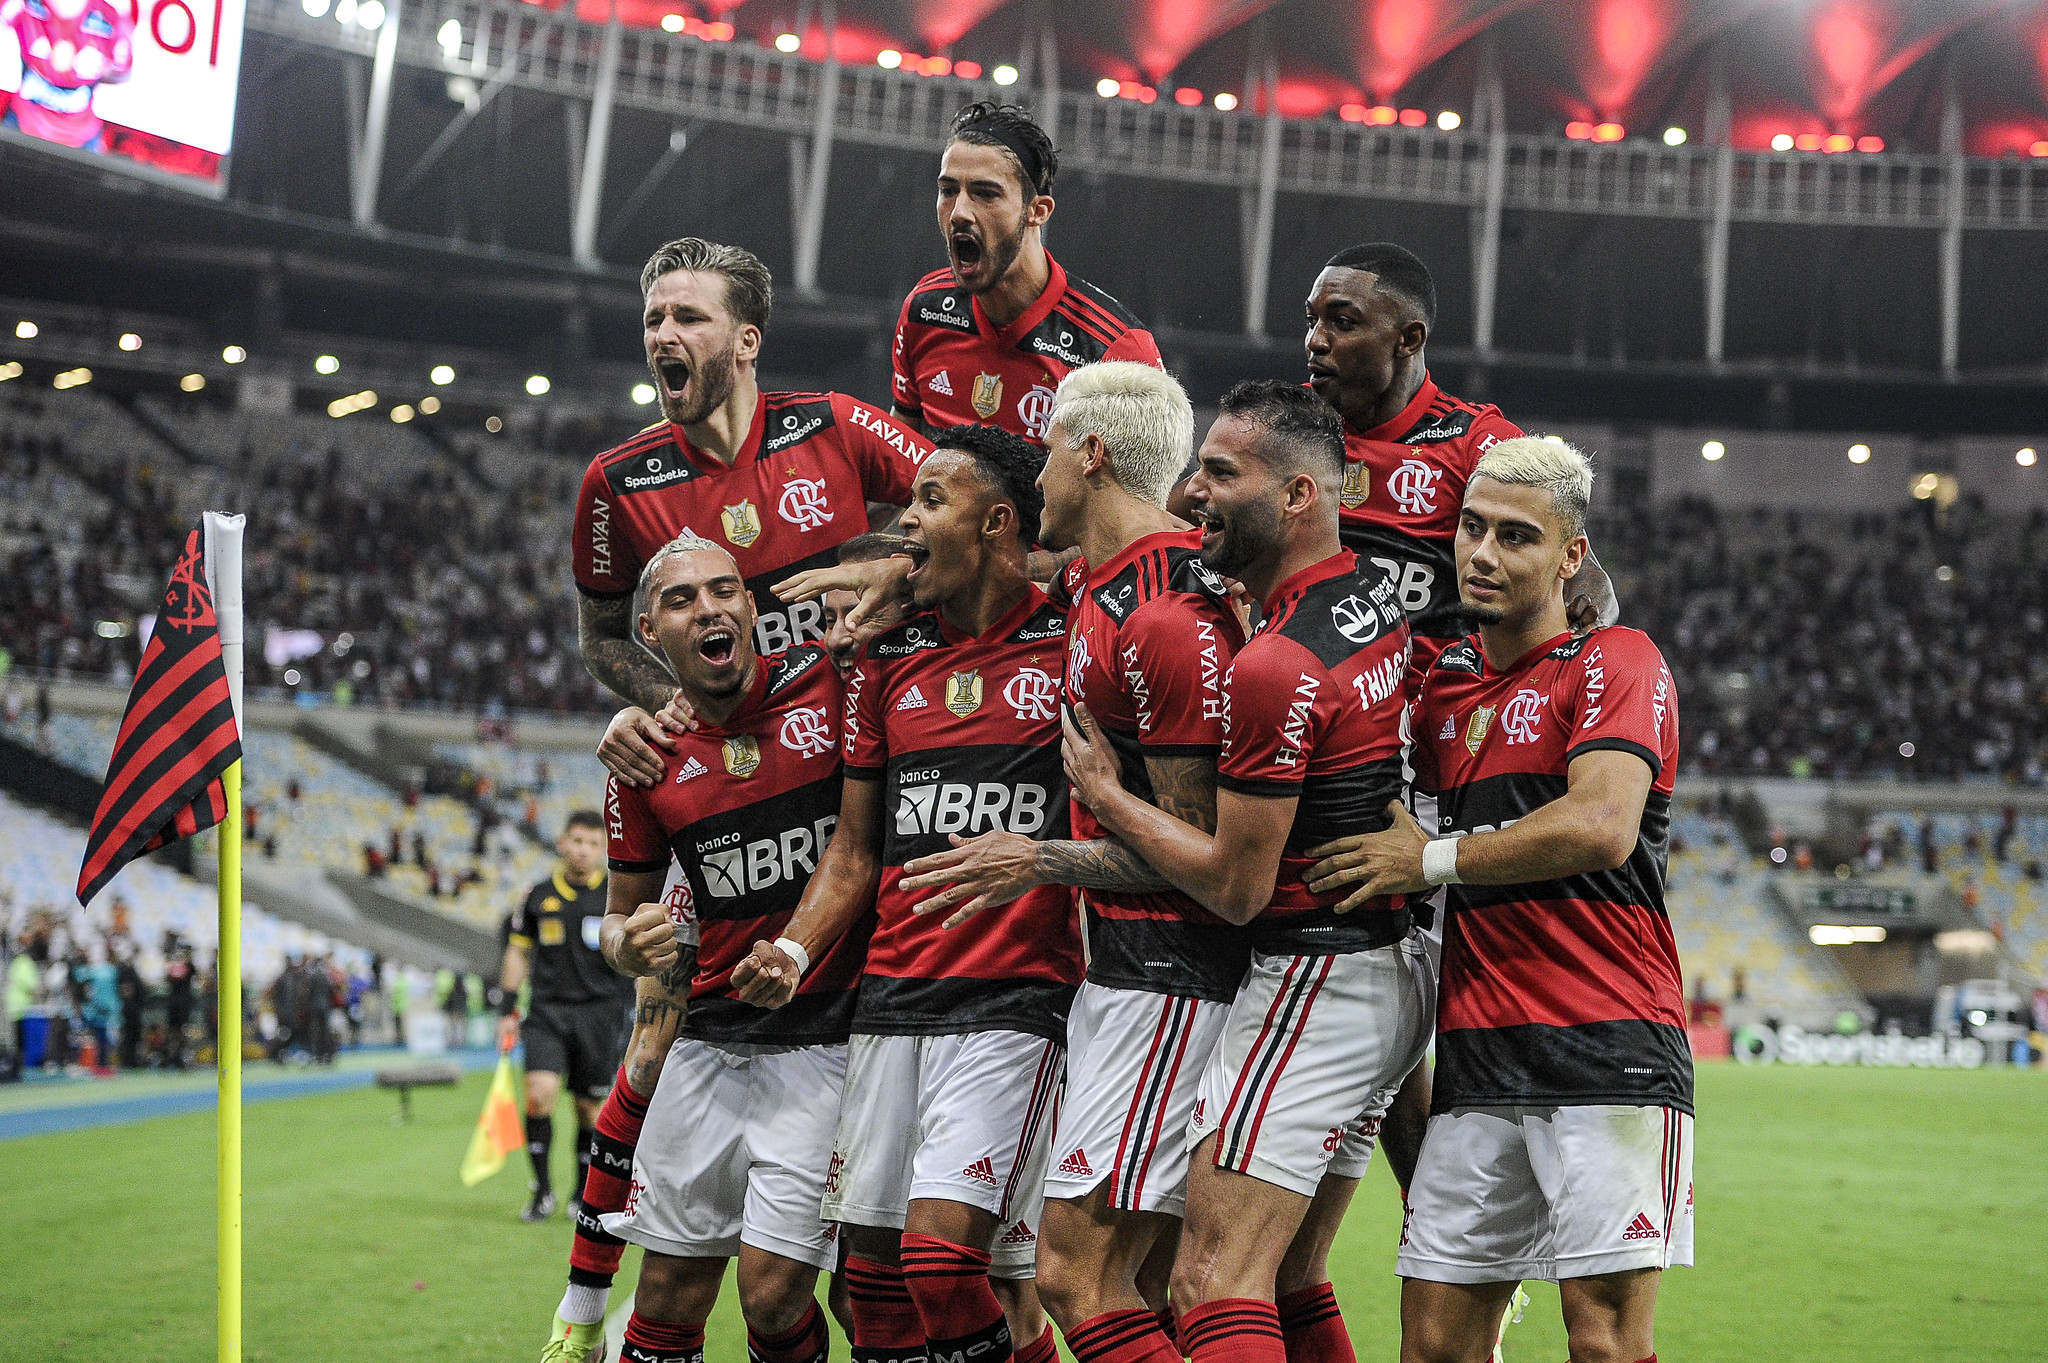 Fora da Europa, Flamengo tem o elenco mais valioso